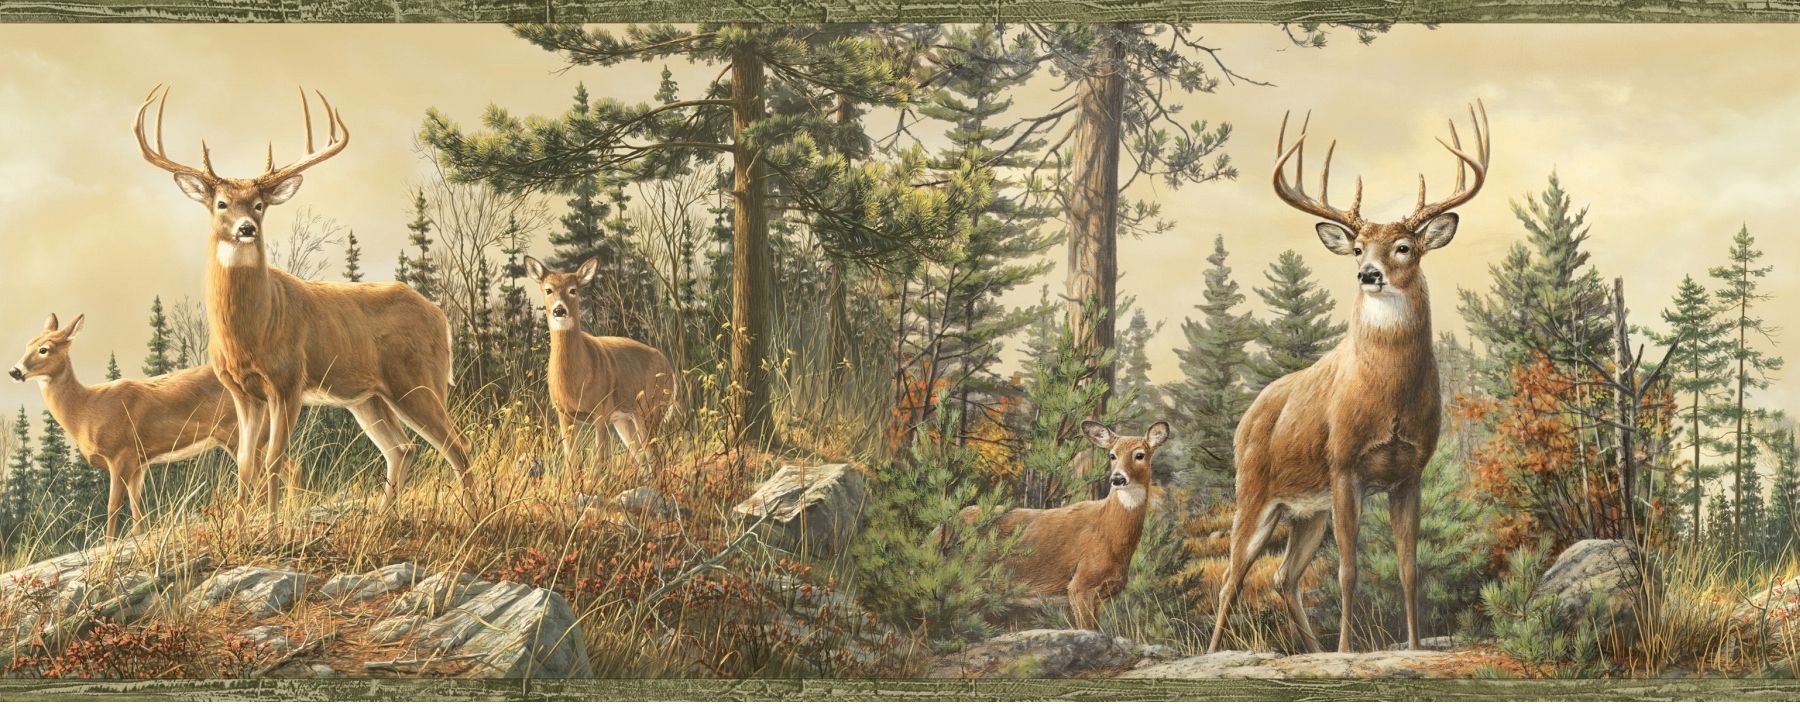 Whitetail Crest Deer Wallpaper Border